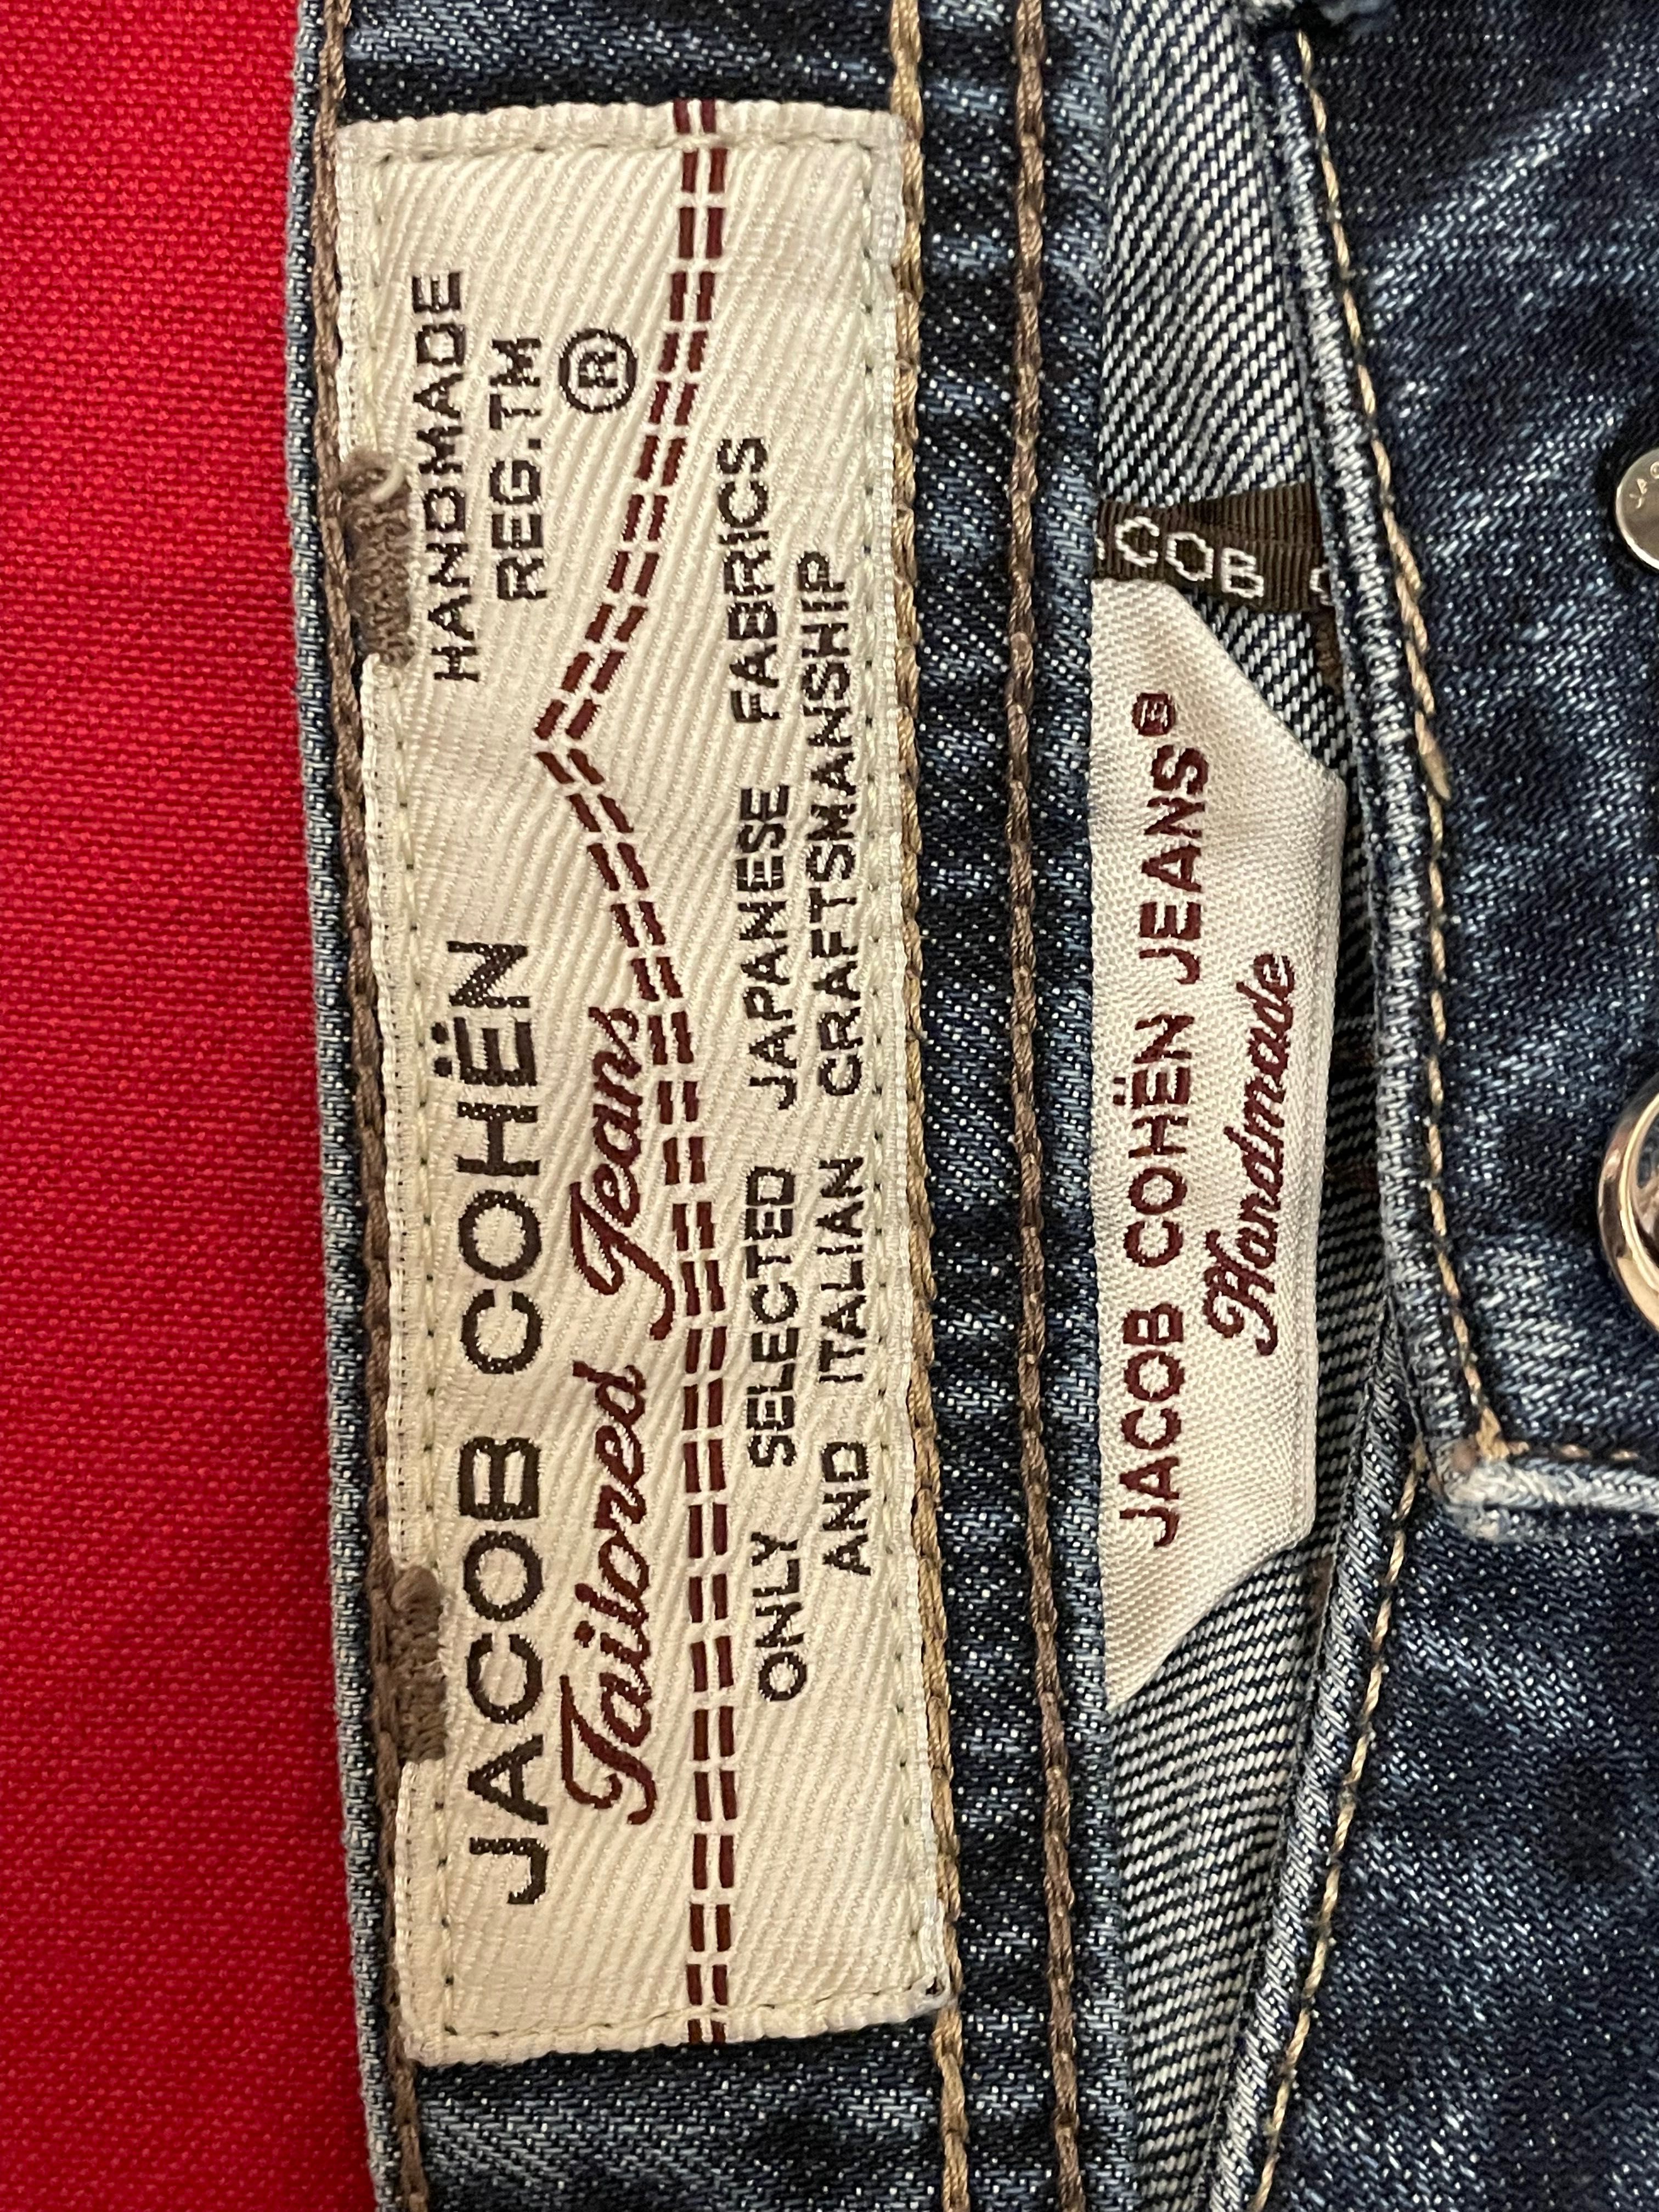 Брендовые джинсы Jacob Cohen оригинал 50-52р. Италия